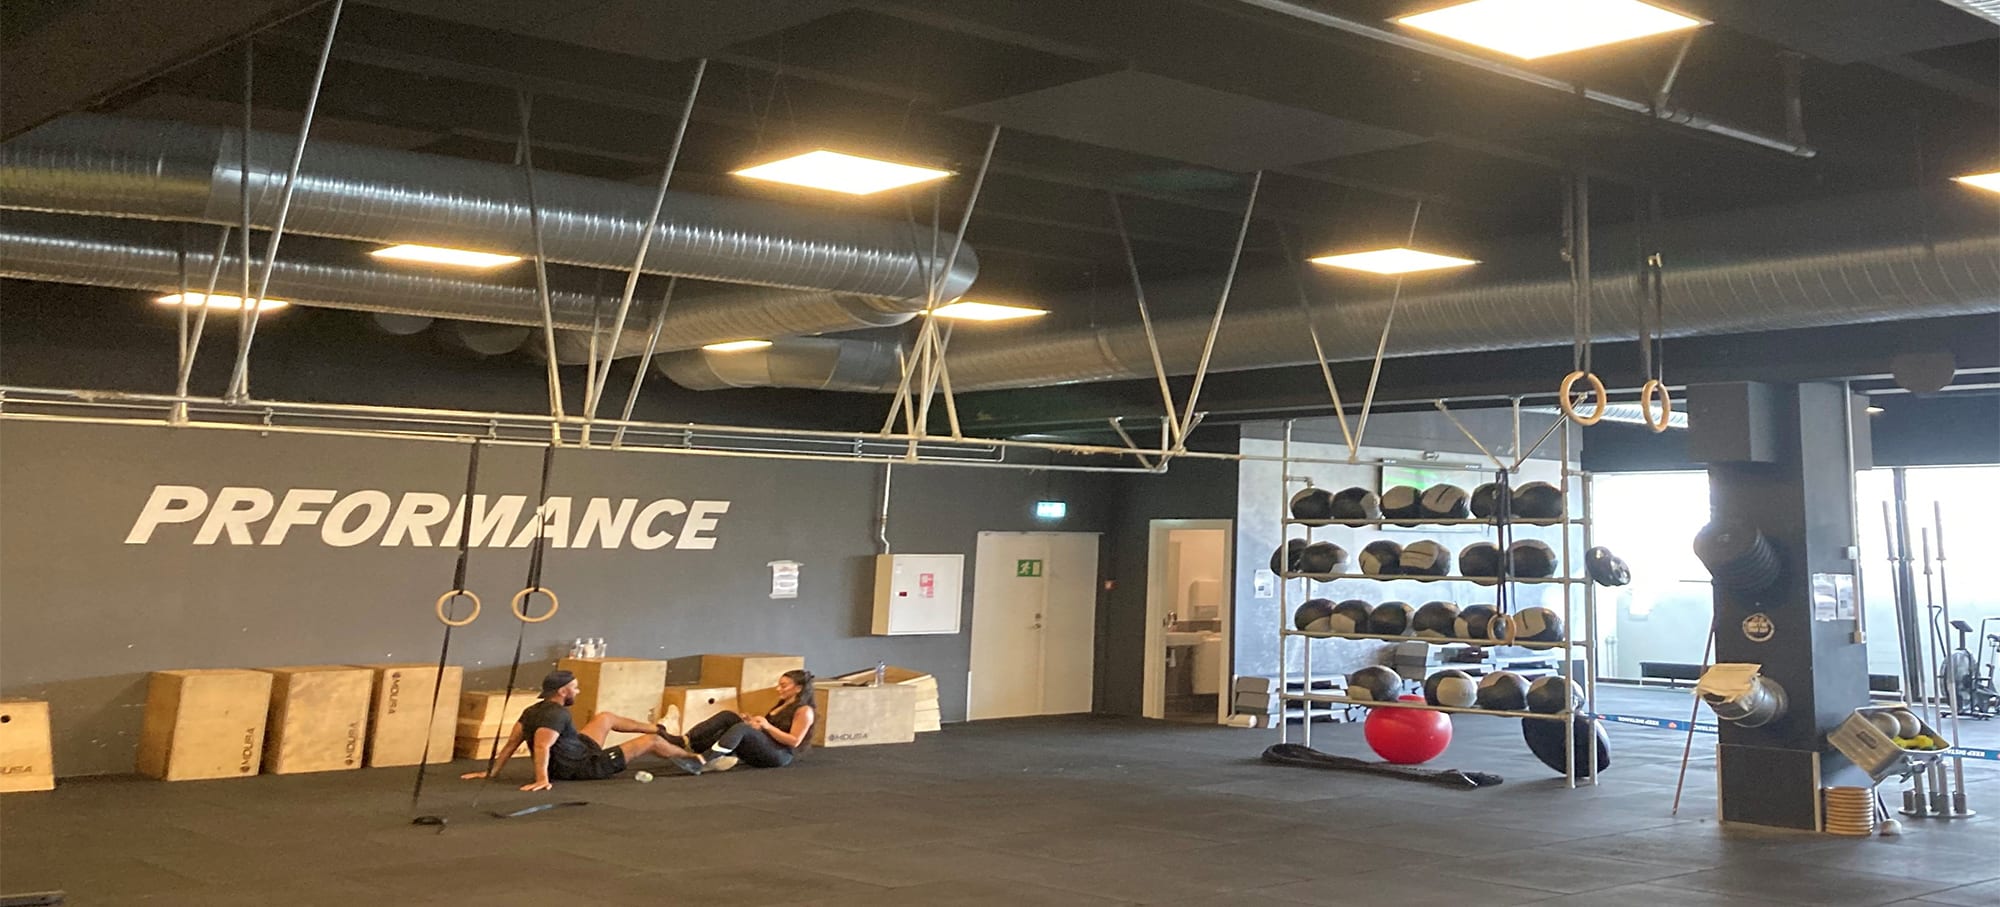 Nørrebro København - Fitness træningscenter SATS